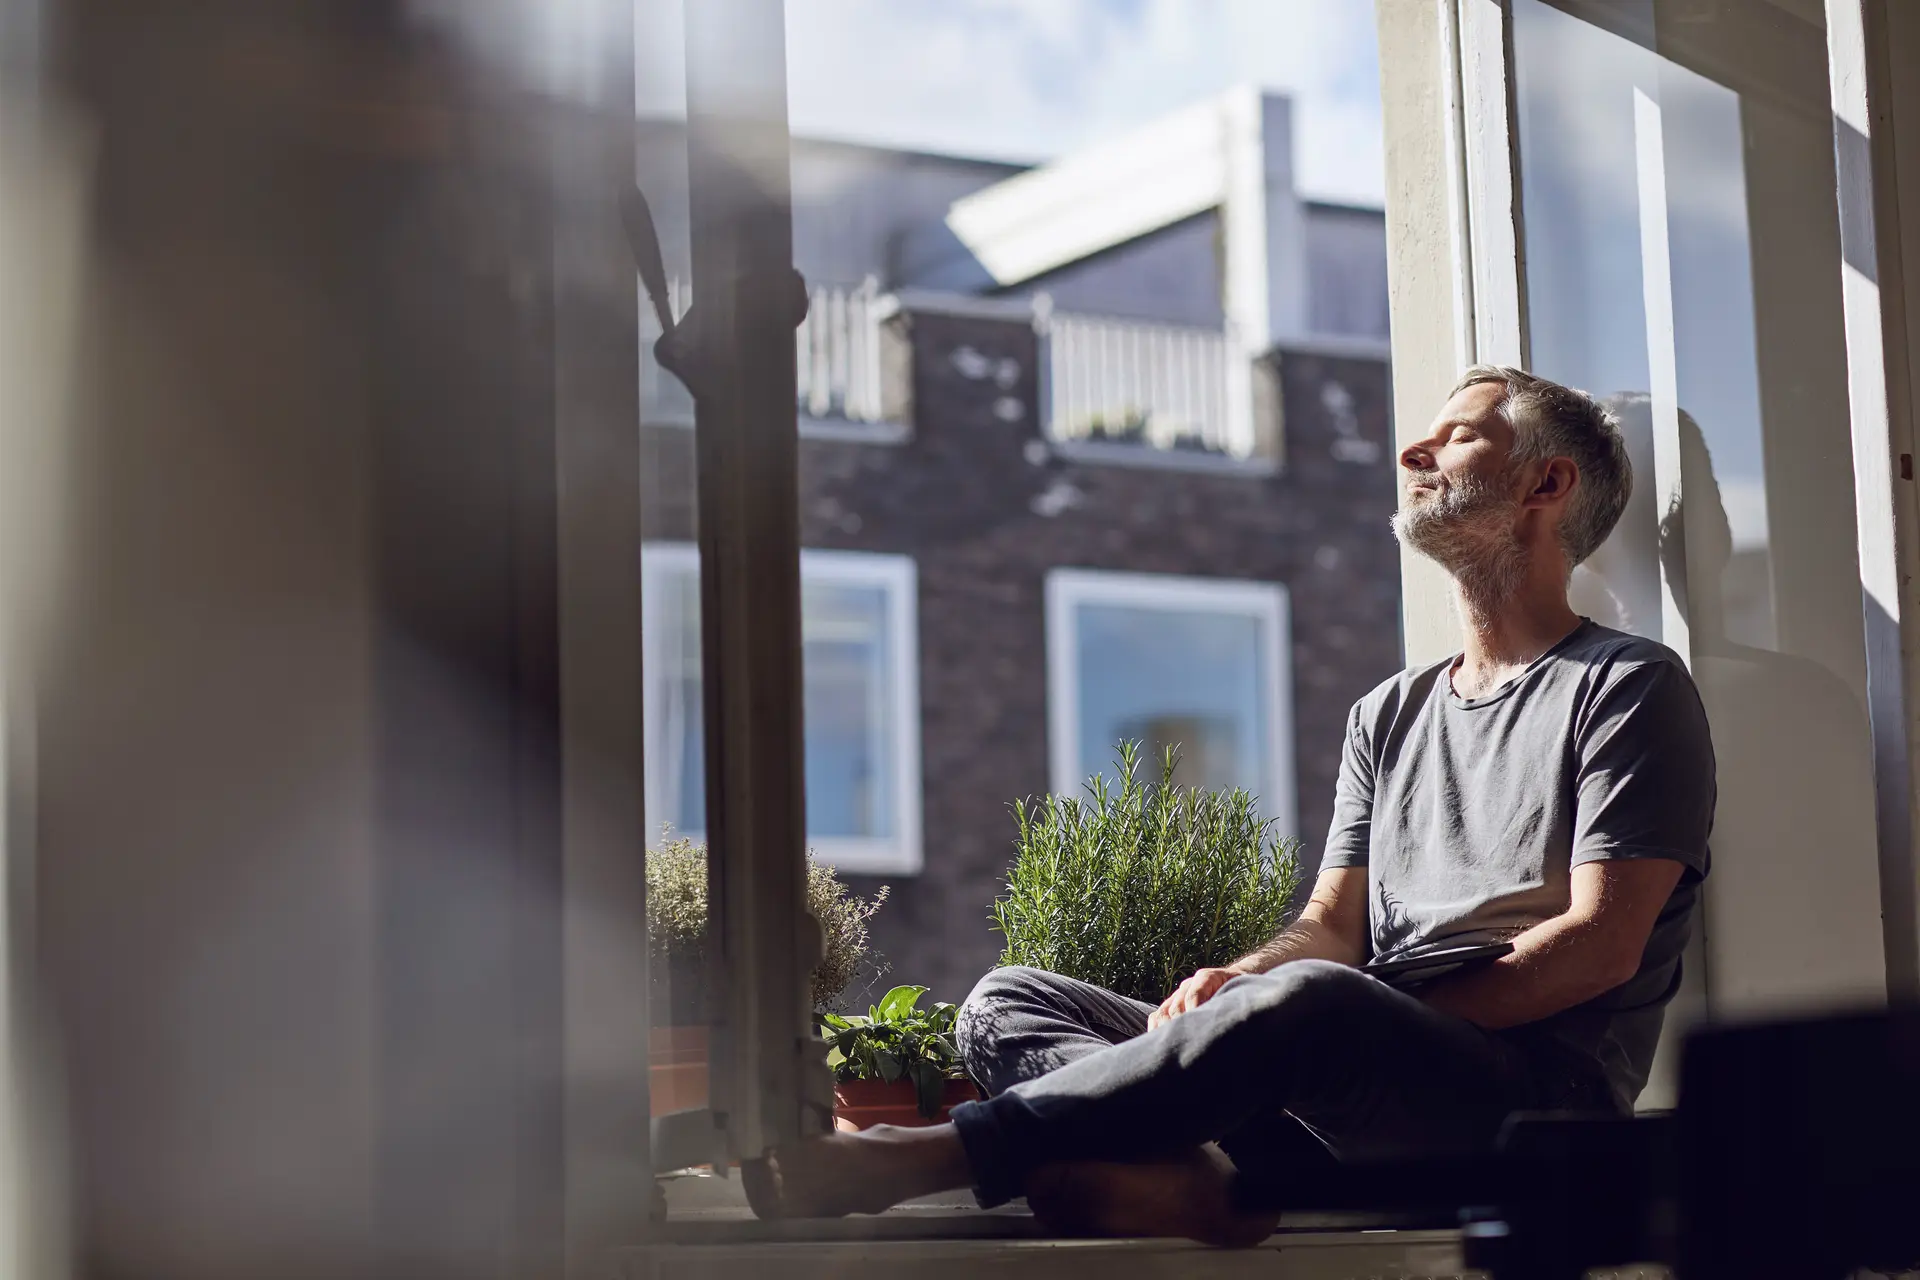 Ein Mann mit grauem Bart sitzt mit geschlossenen Augen auf dem Fenstersims und genießt die Sonne.